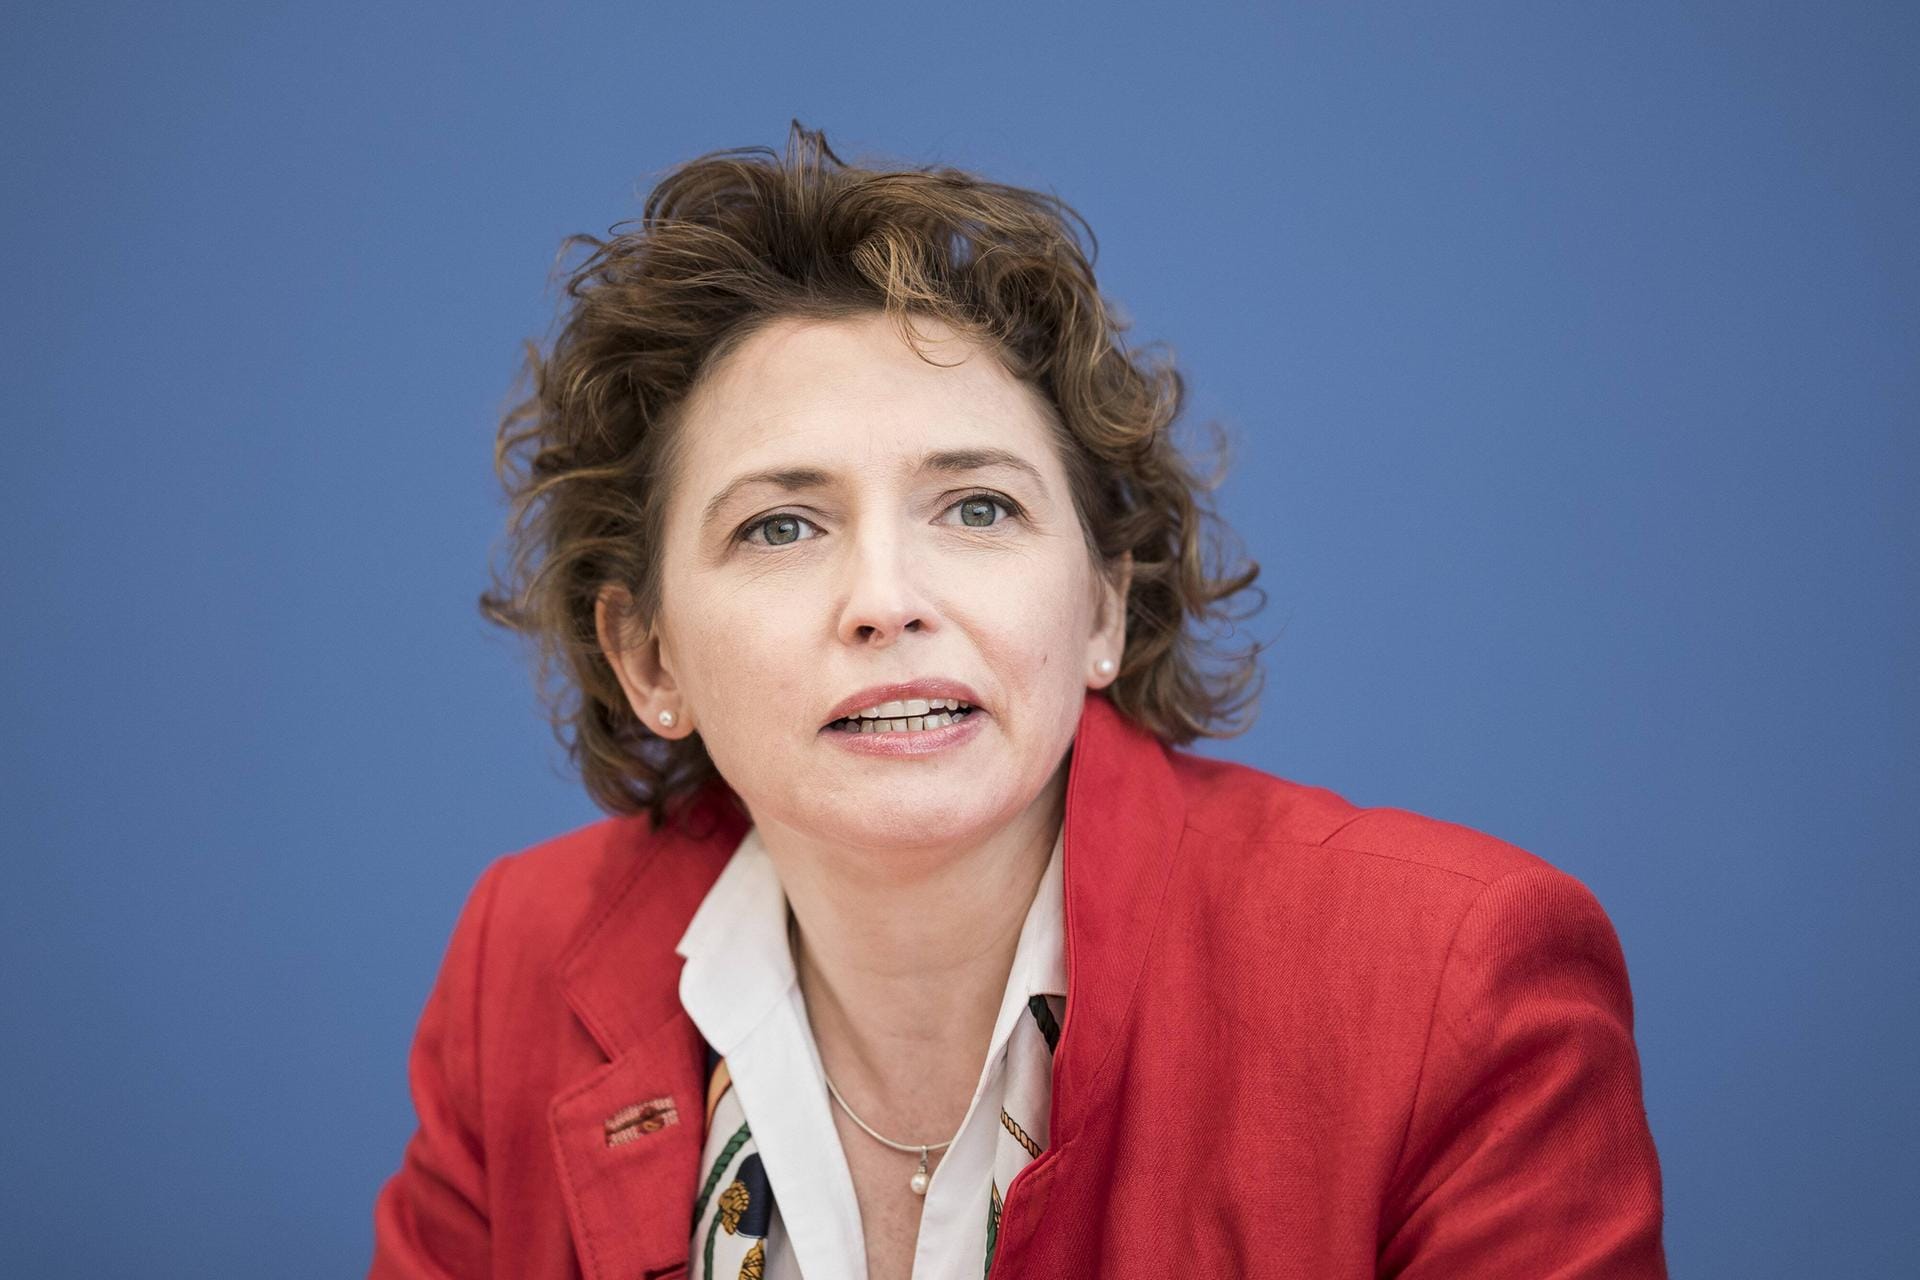 Nicola Beer ist ebenfalls stellvertretende Bundesvorsitzende und damit schon qua Amt zumindest im erweiterten Kreis der Anwärter. Vorher war sie seit 2013 Generalsekretärin, mit wechselhaftem Erfolg. Seit der Europawahl sitzt sie nun im Europaparlament, wo sie zur Vizepräsidentin gewählt wurde.